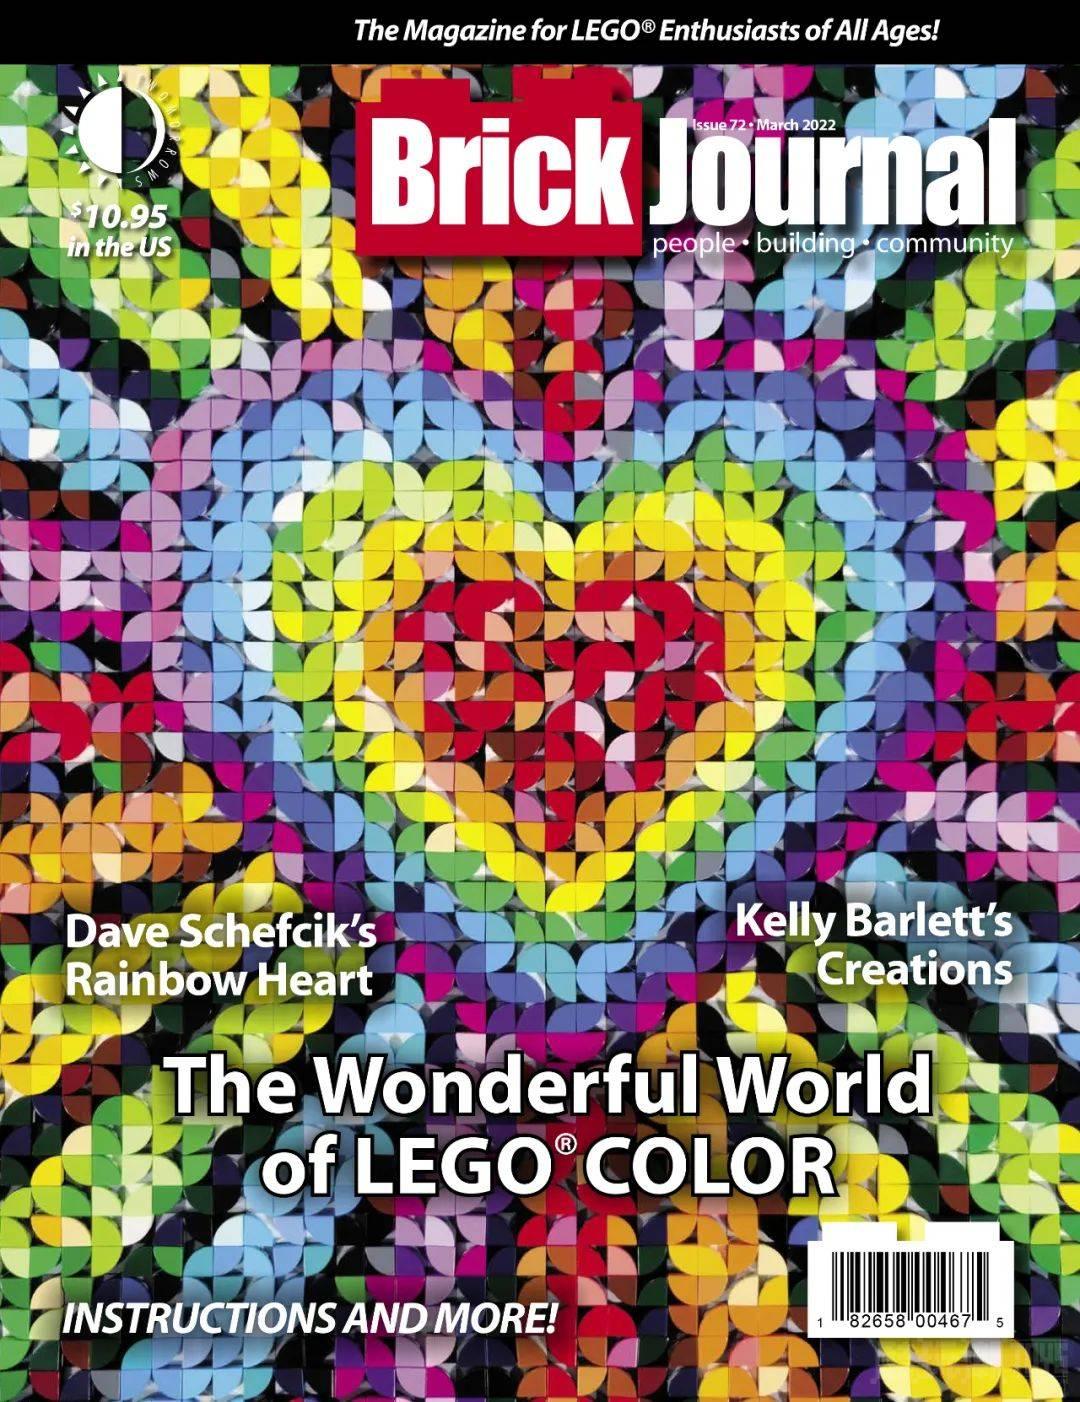 分享一件快乐的事儿~《BrickJournal》杂志刊登了酷玩潮的国内探展 -1